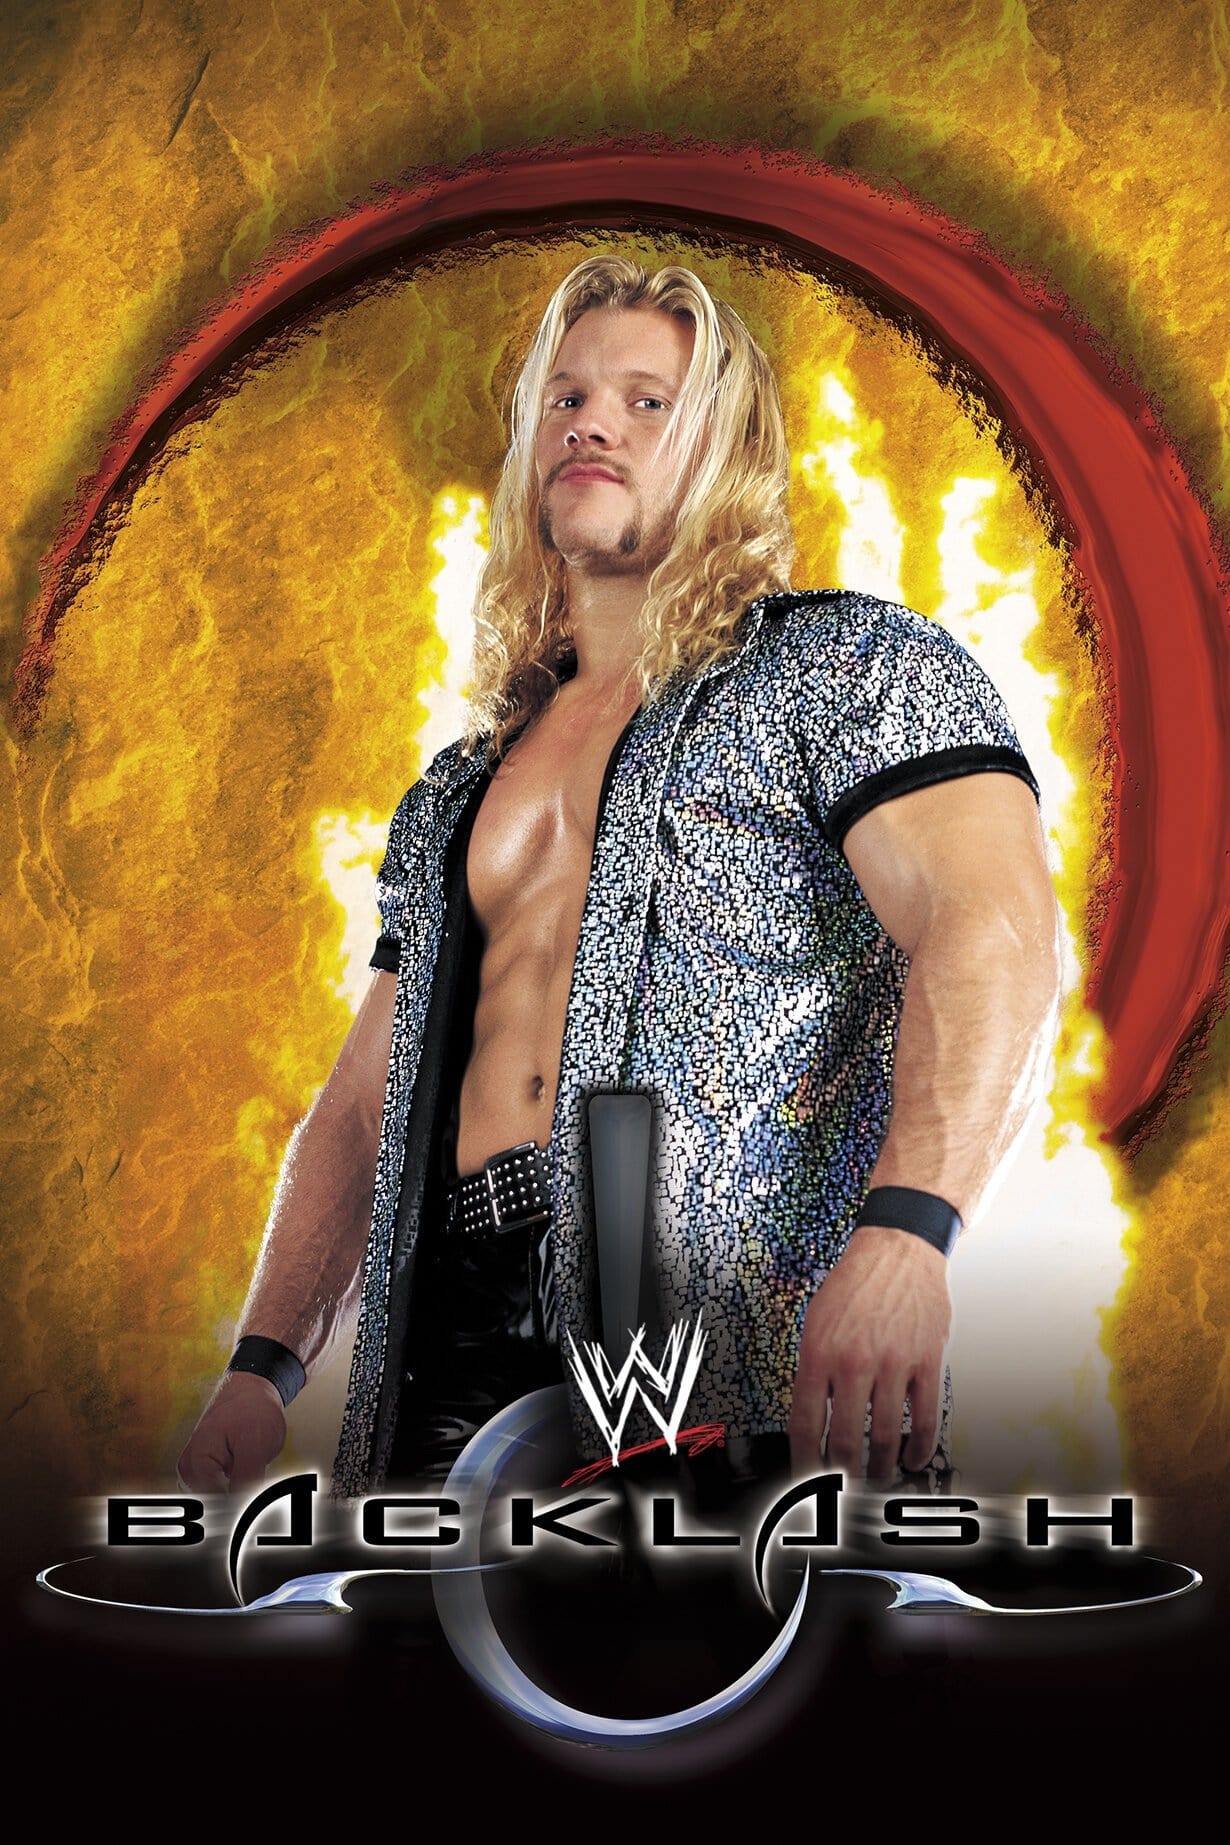 WWE Backlash 2000